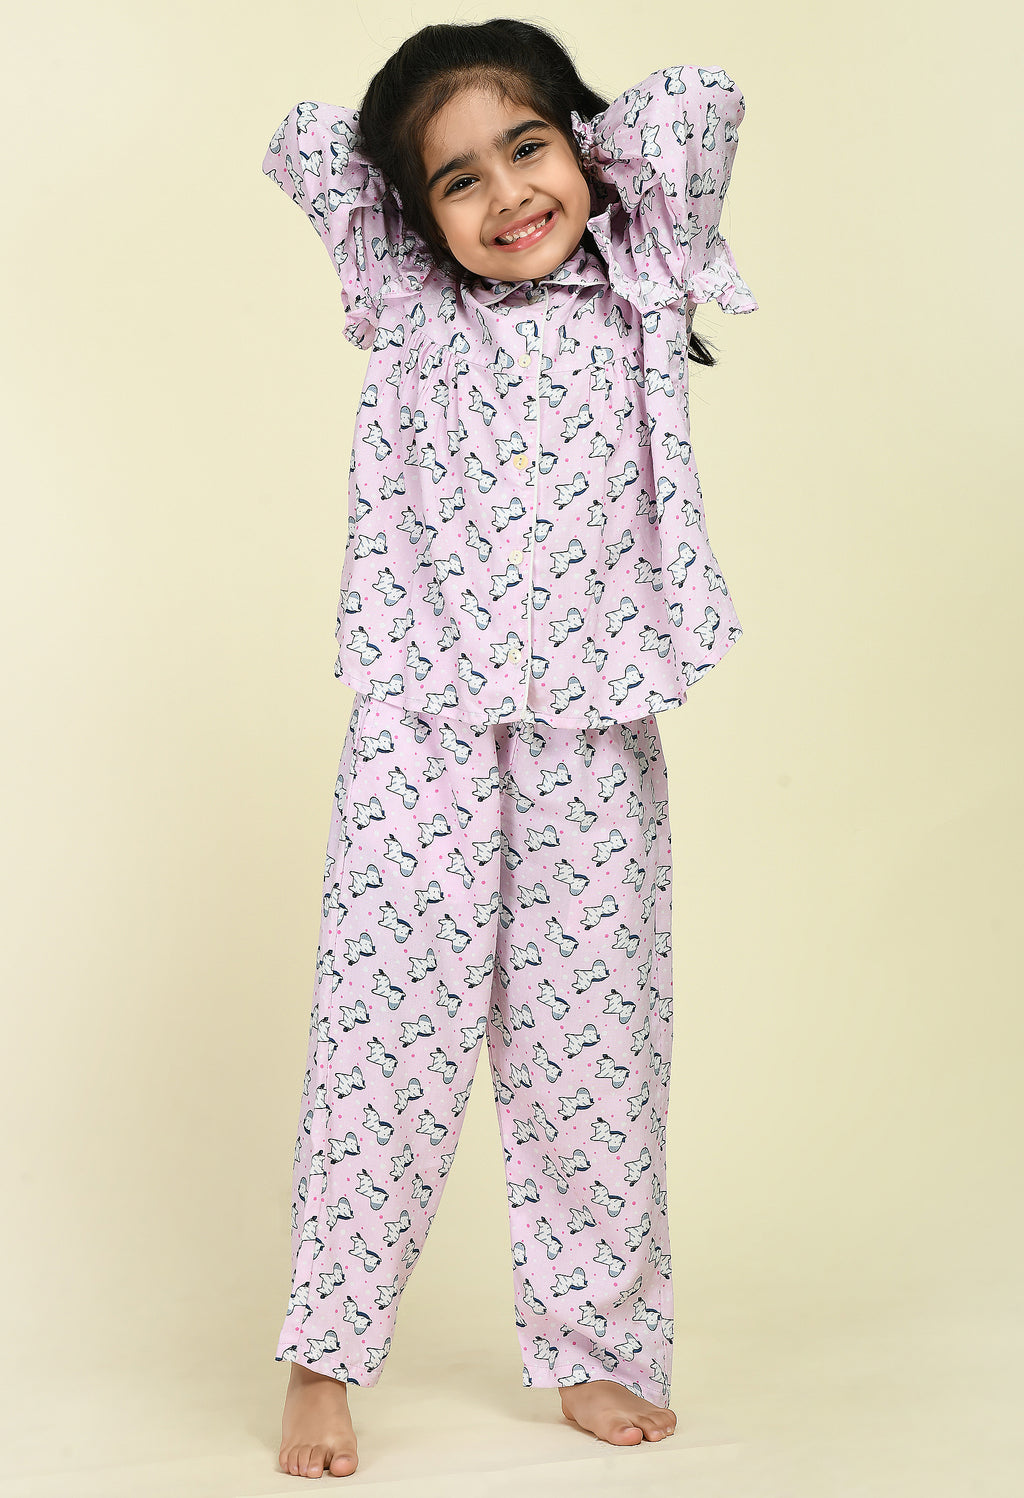 Disney Princess Girls Size 5 Pajama Night Dress And Genuine Kids Out wear  Dress | eBay